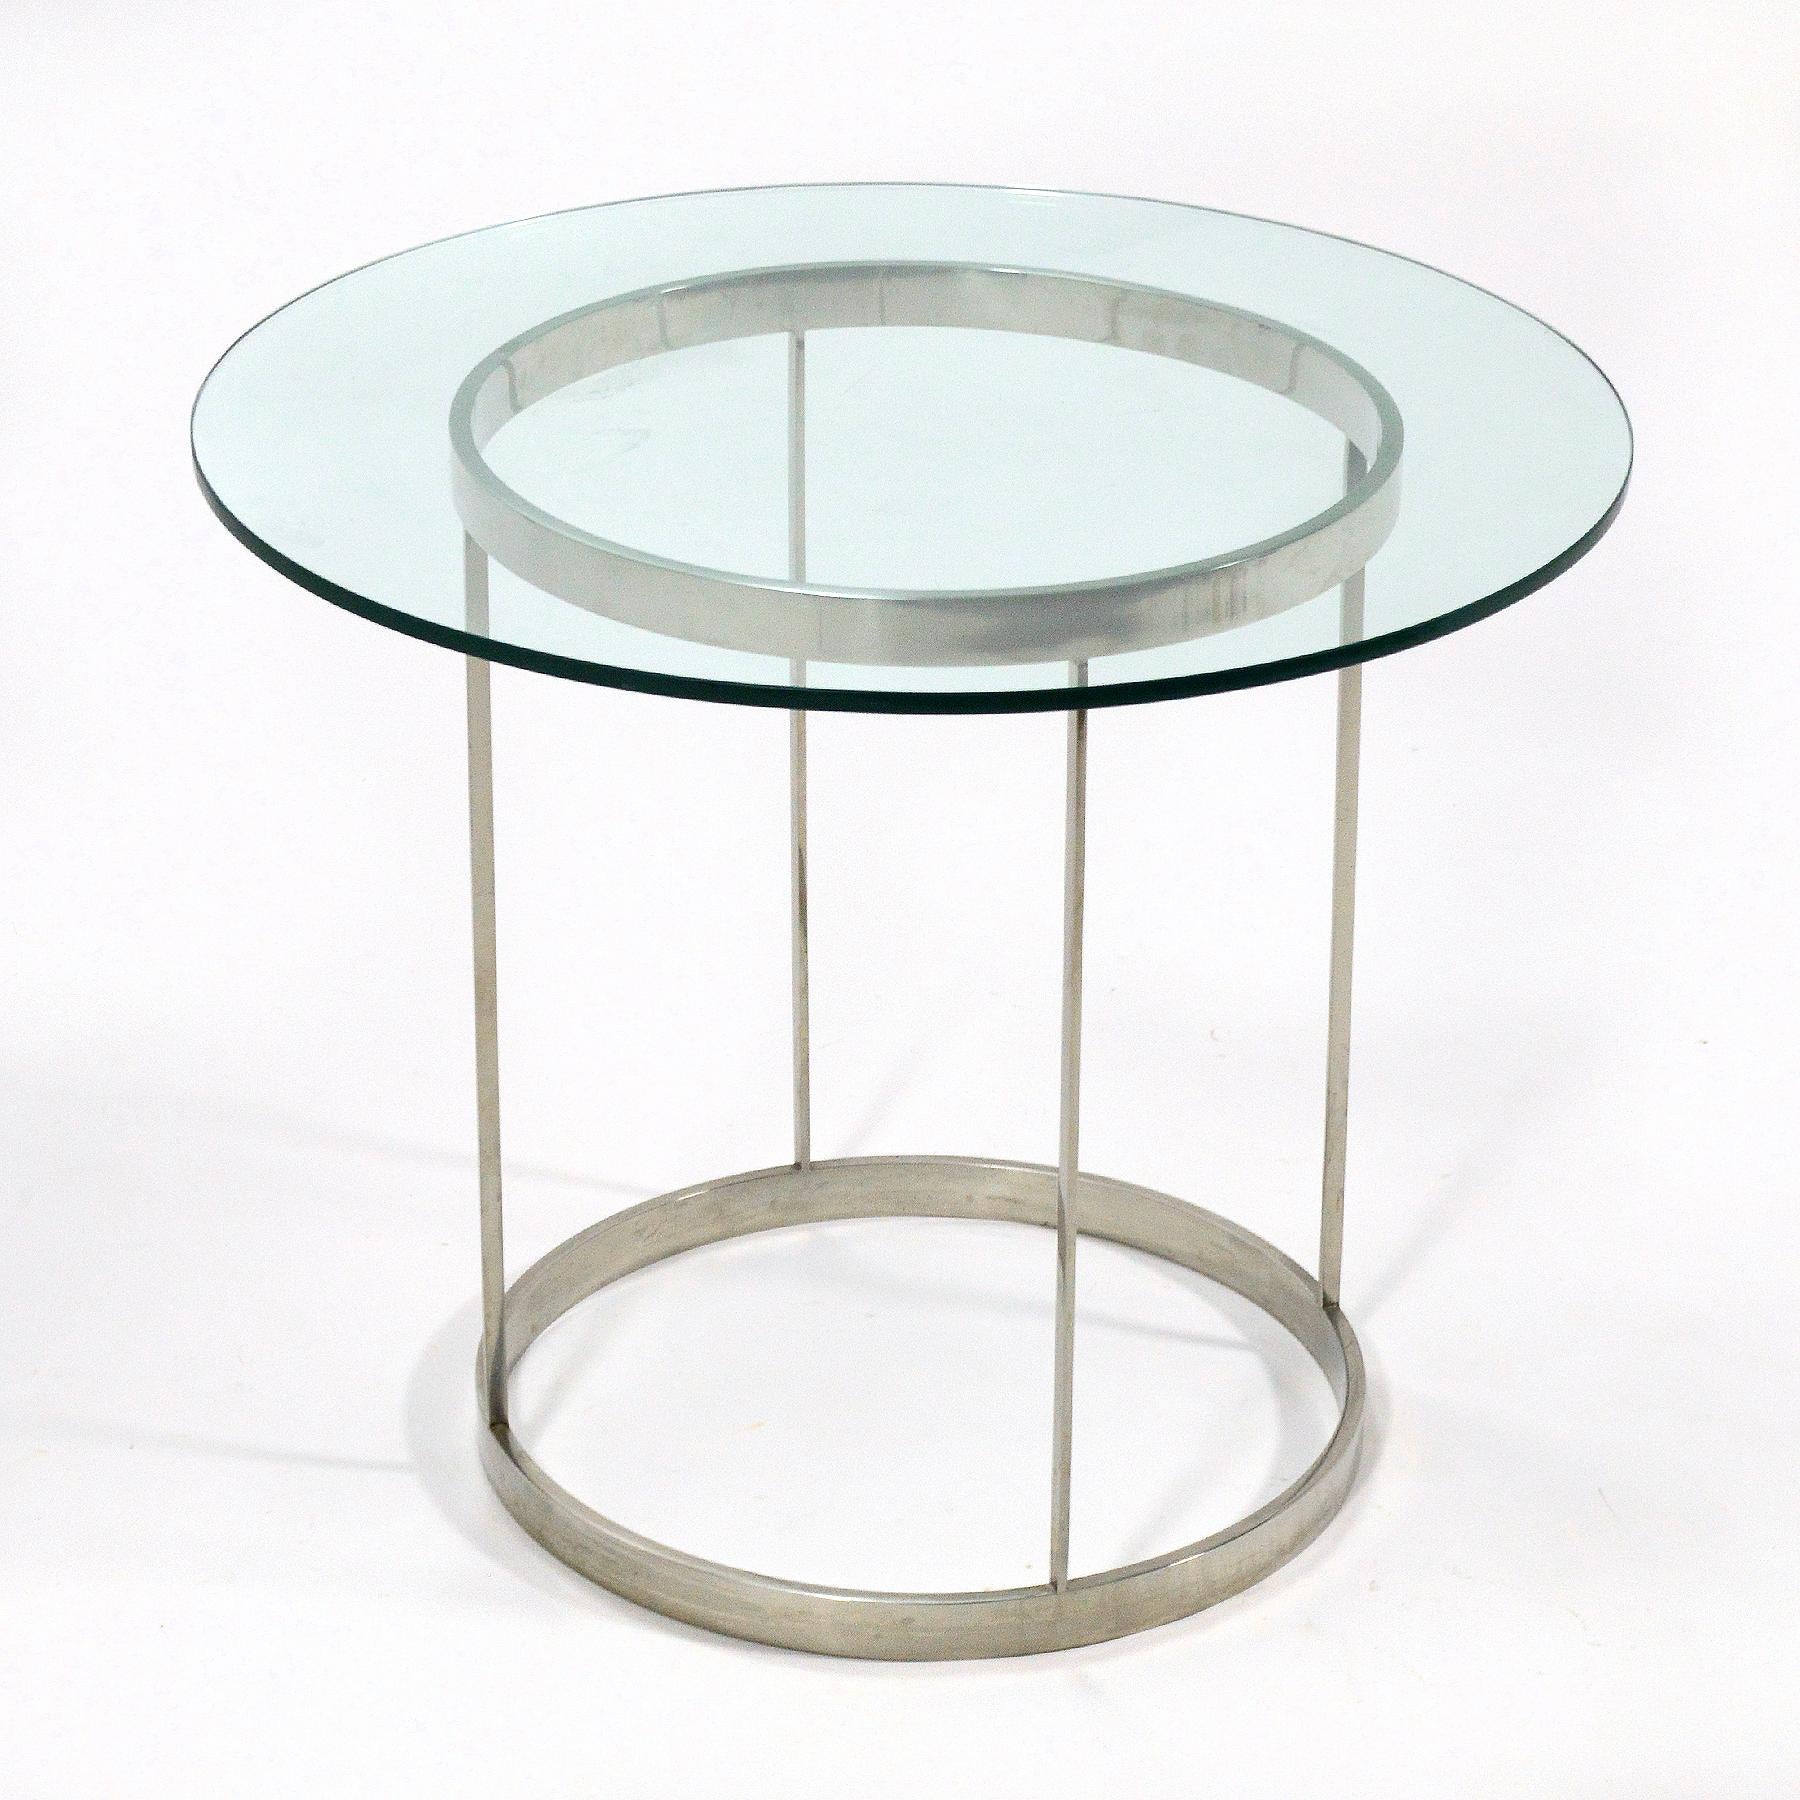 Wir lieben diesen außergewöhnlichen Tisch. Wir lieben die Einfachheit und Ehrlichkeit der Materialien, wir lieben die fachmännische Verarbeitung und vor allem das elegante, minimalistische Design. Es wurde von Metalworks als Teil einer